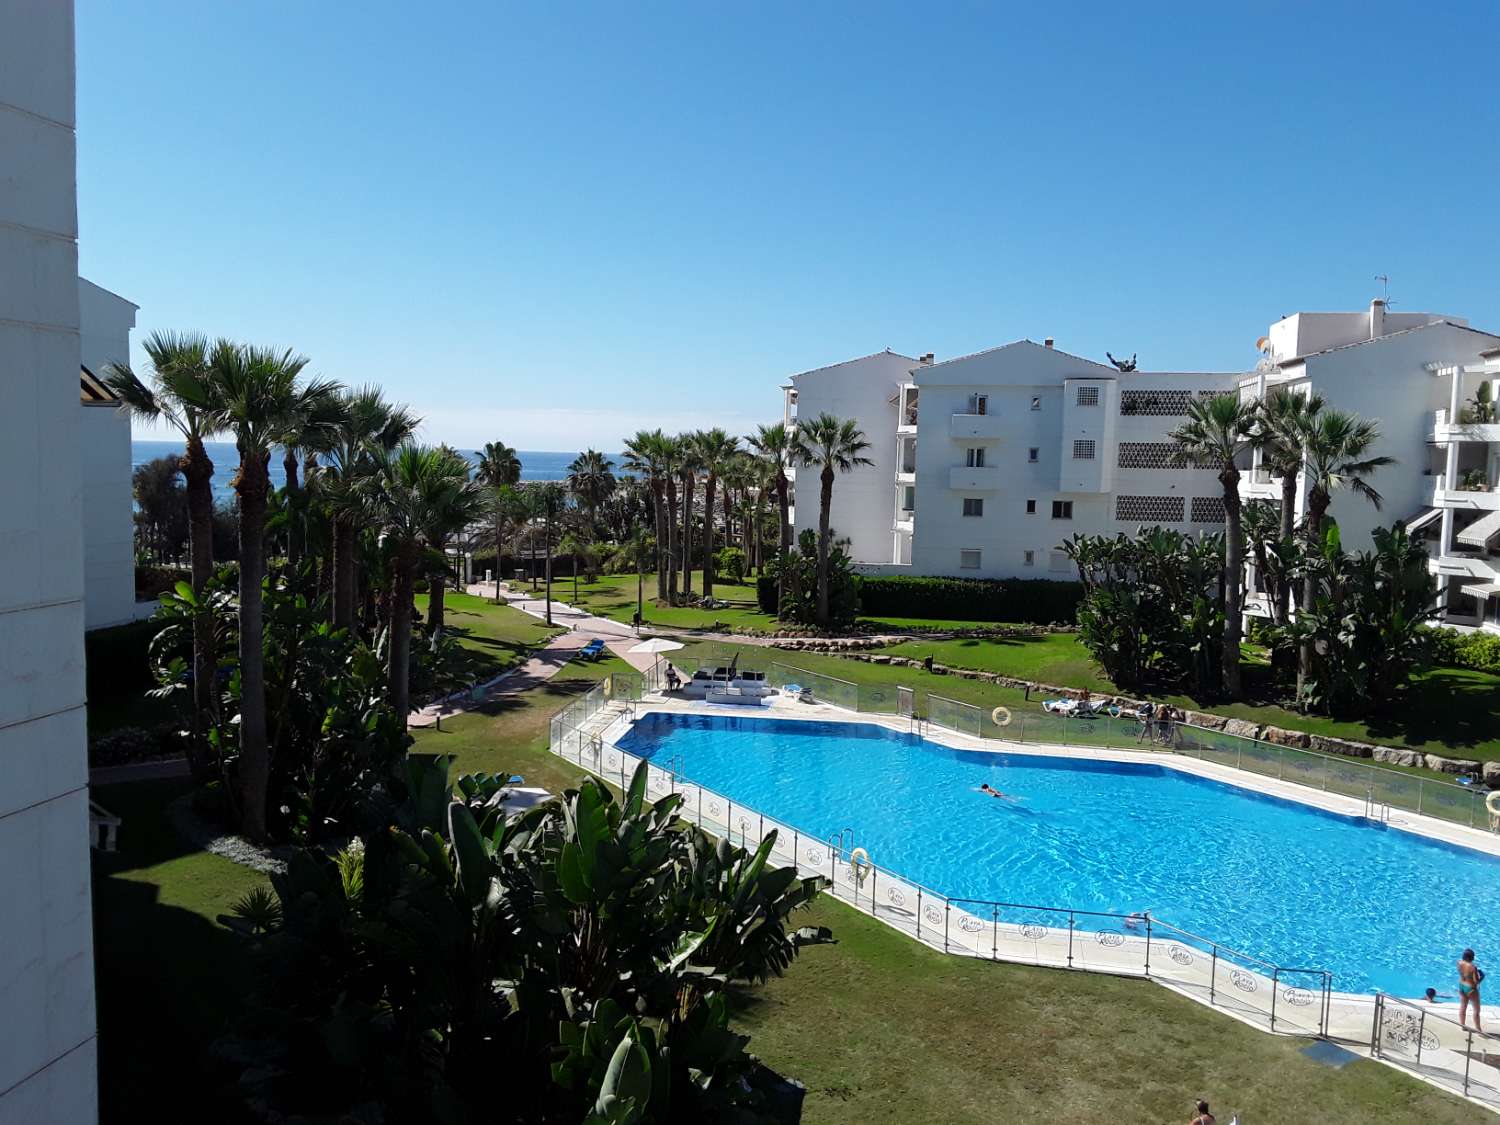 For Rent. Apartamento with sea views. Puerto Banus, Marbella.